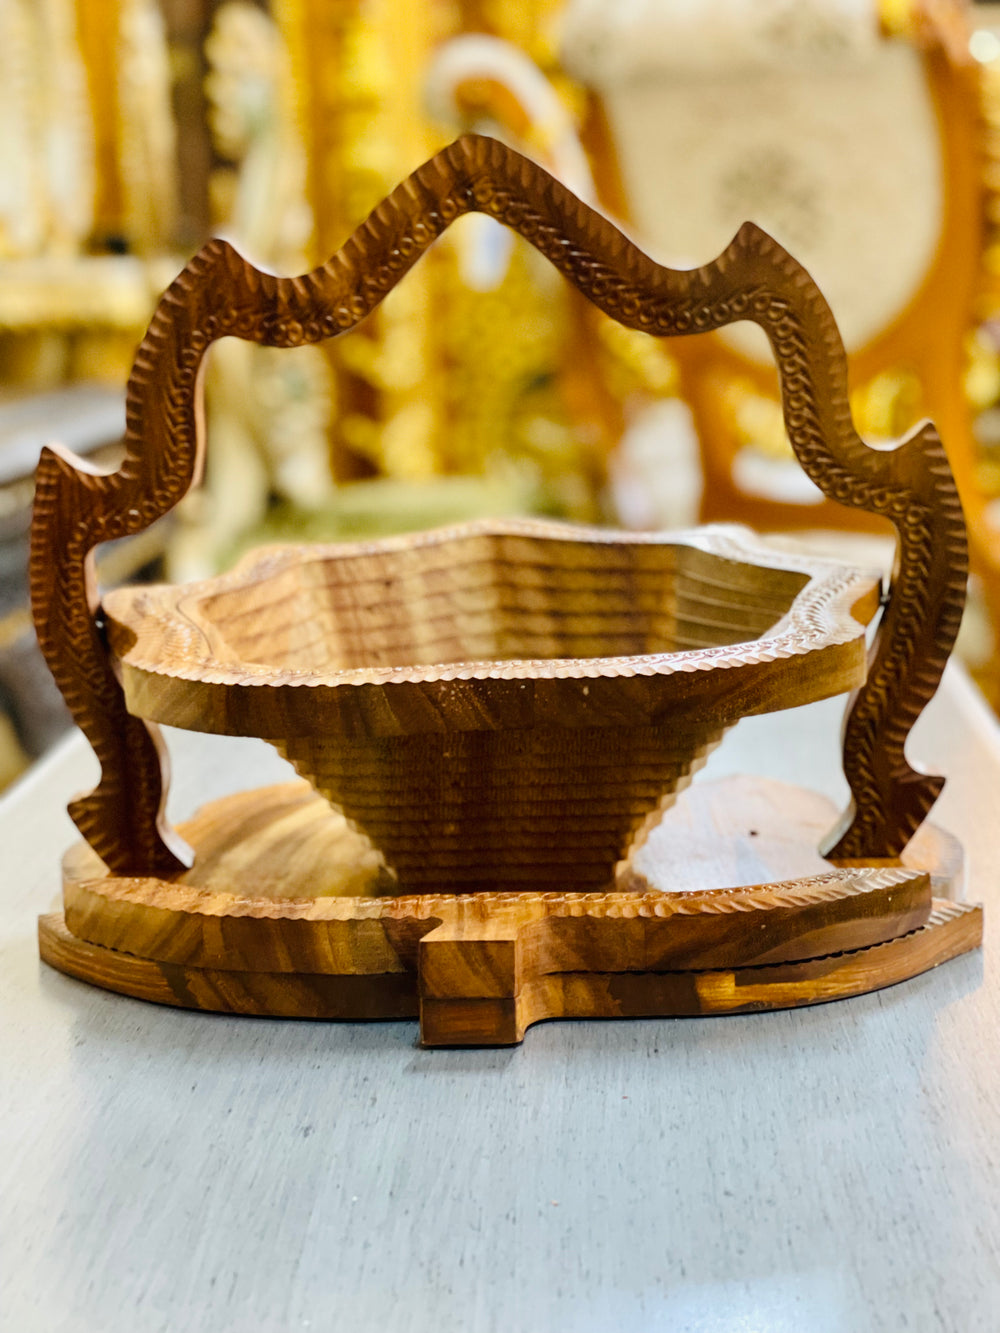 Rosewood Handmade collapsible basket, 12” diameter leaf shape /  fruit basket  /   Bread bowl  /   Hot plate  /    Trivet to basket  /